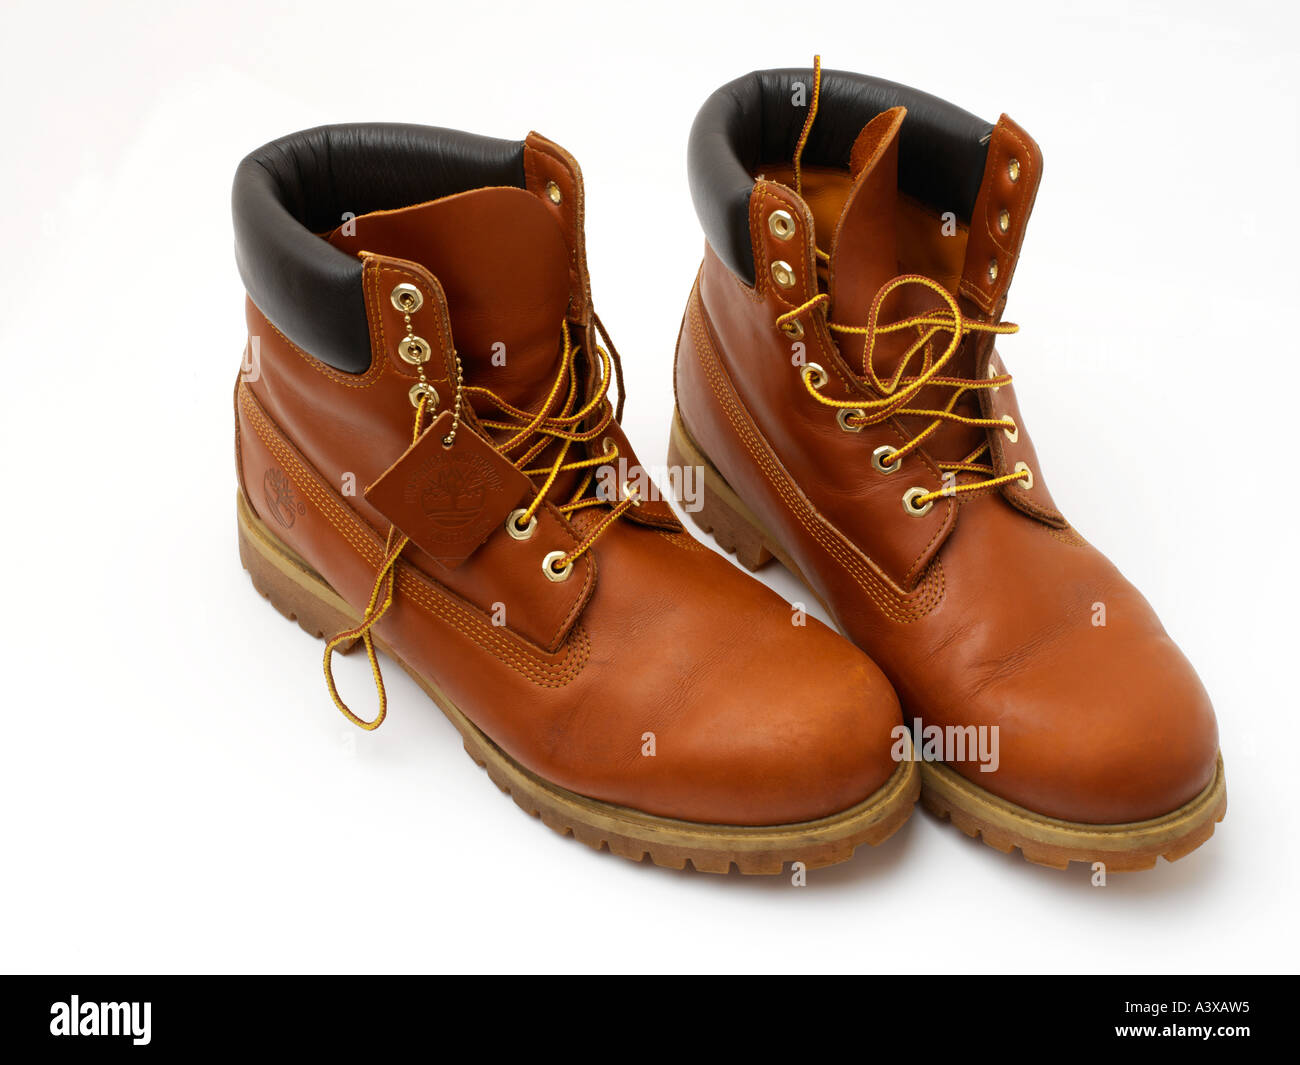 Timberland boots immagini e fotografie stock ad alta risoluzione - Alamy